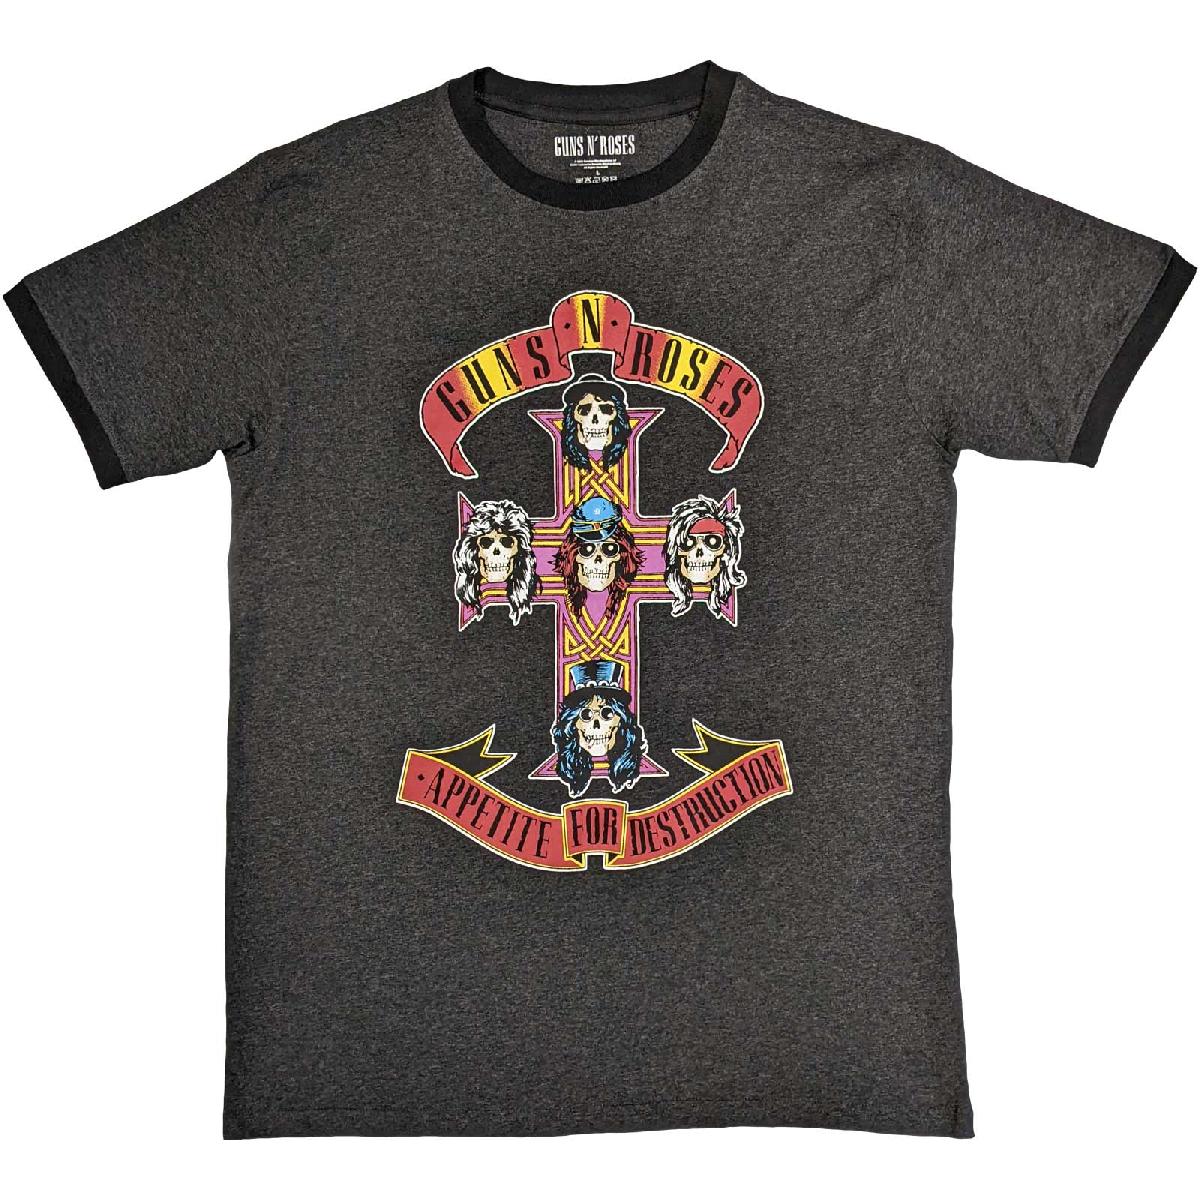 Guns N' Roses T-Shirt: Appetite for Destruction